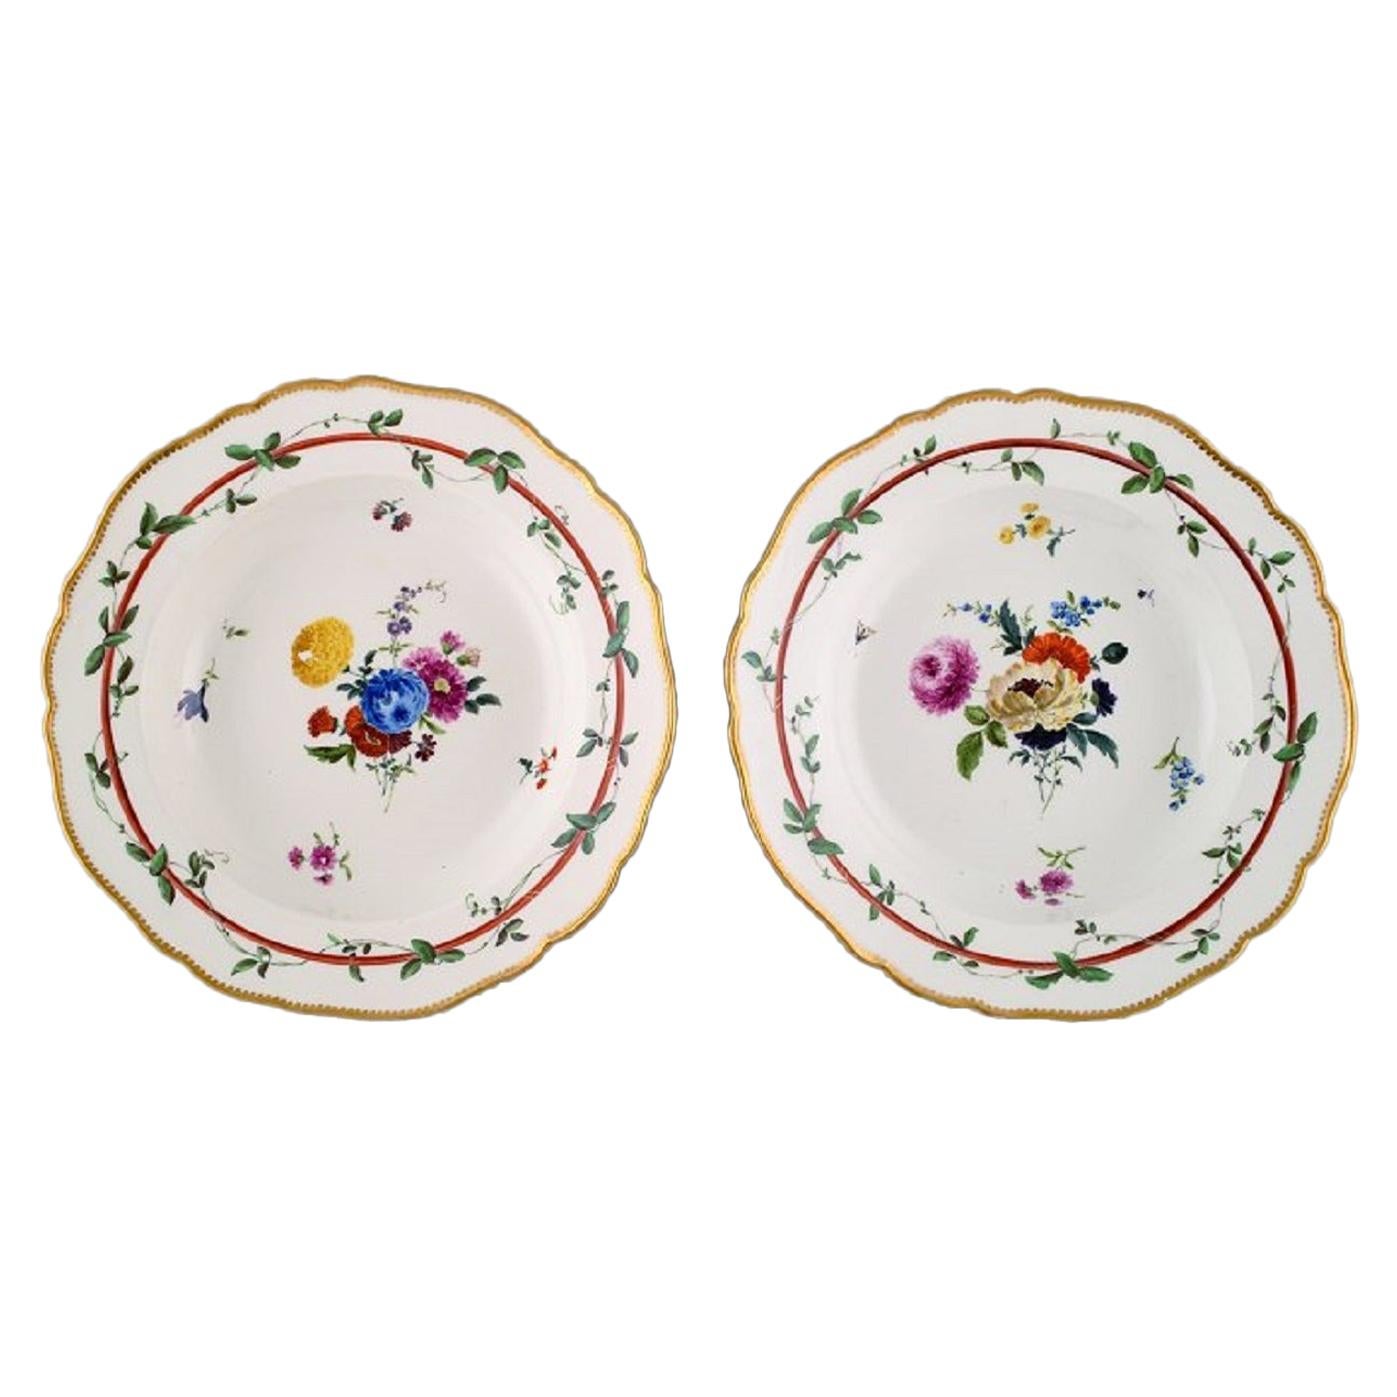 Zwei antike Meißner tiefe Teller aus durchbrochenem Porzellan mit floralen Motiven